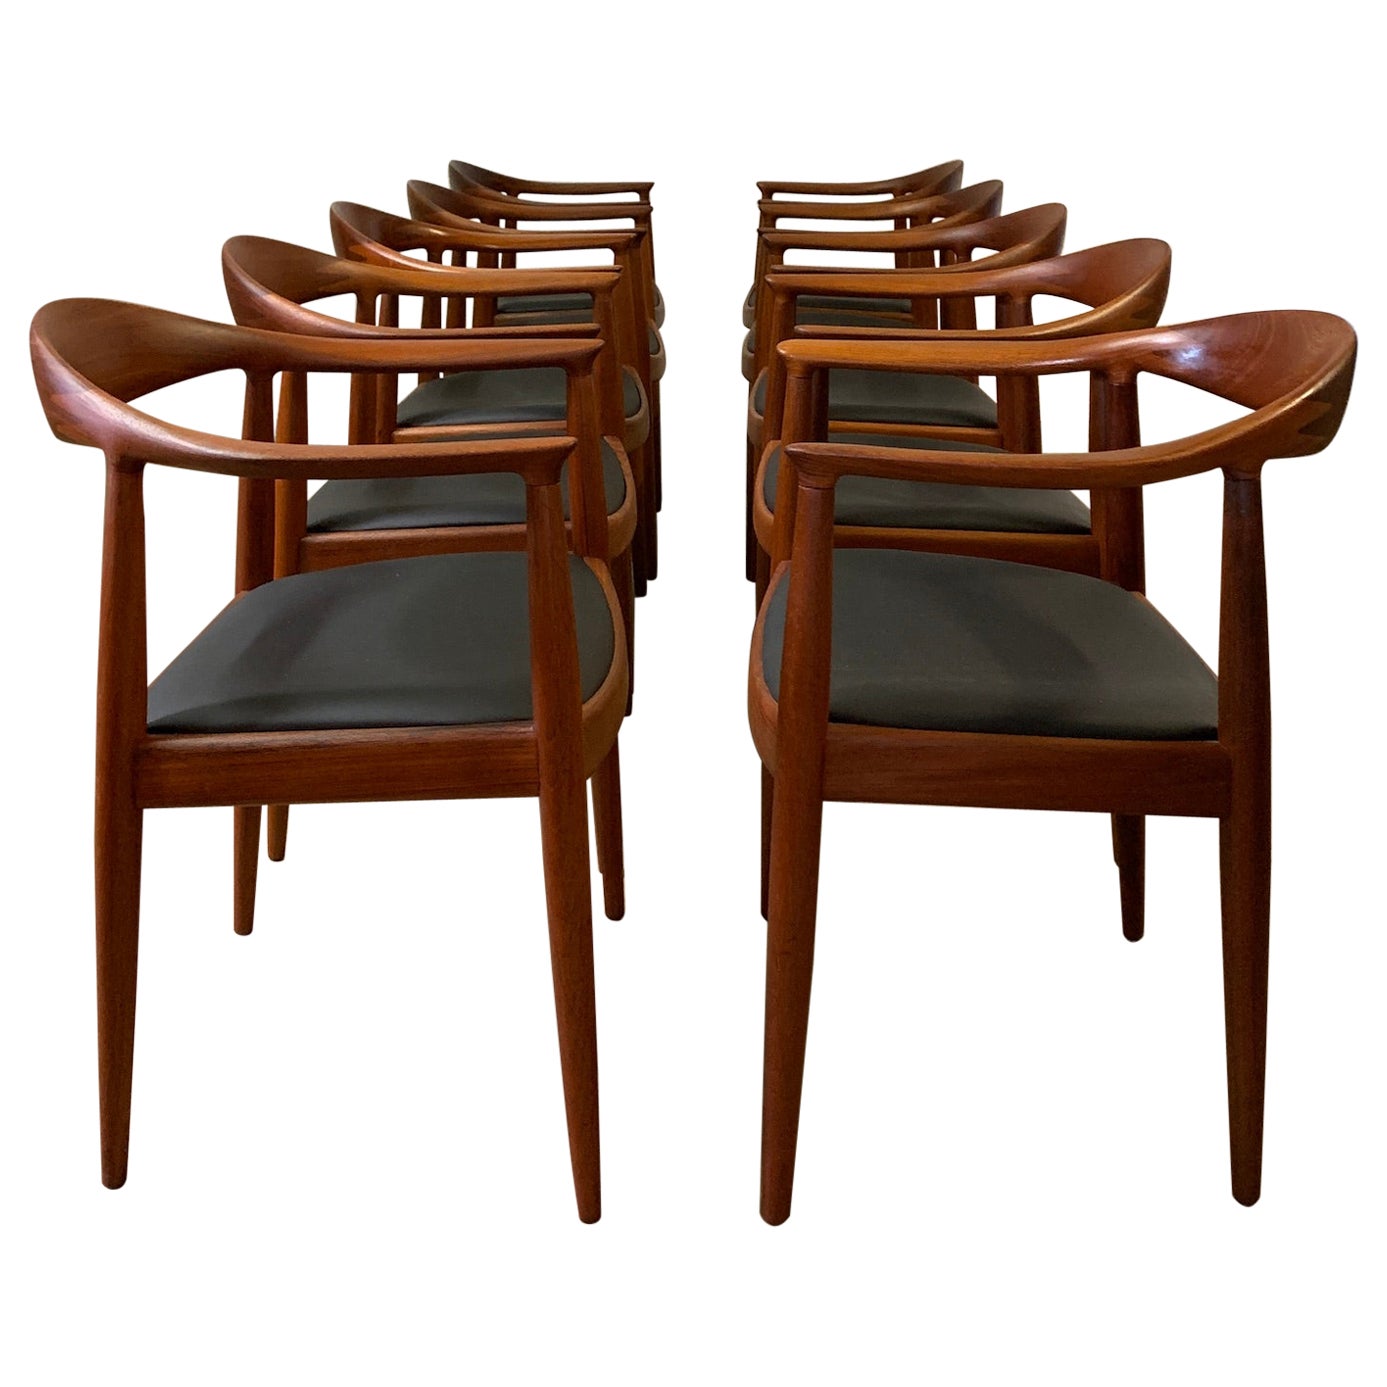 Ten Teak Round Chairs by Hans Wegner